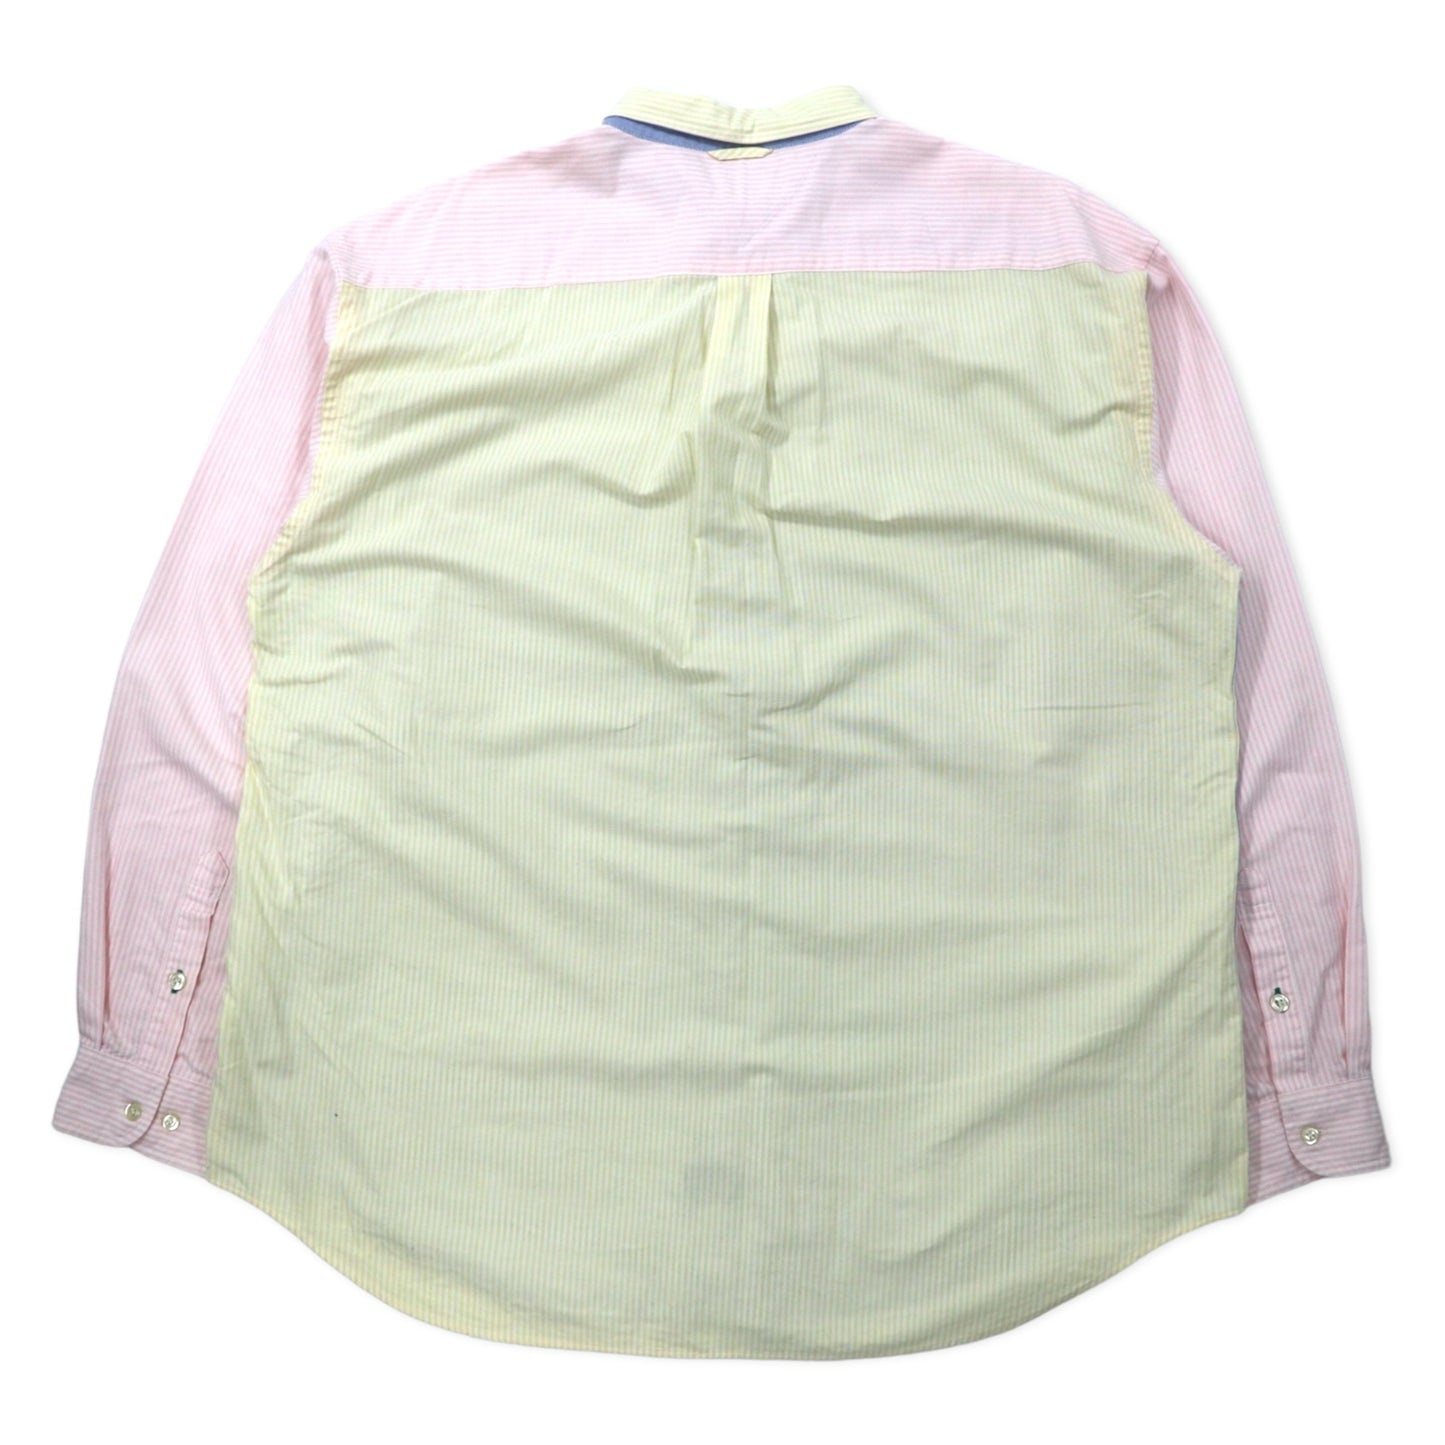 TOMMY HILFIGER 90年代 マルチストライプ オックスフォード ボタンダウンシャツ XL マルチカラー コットン ワンポイントロゴ刺繍 ビッグサイズ